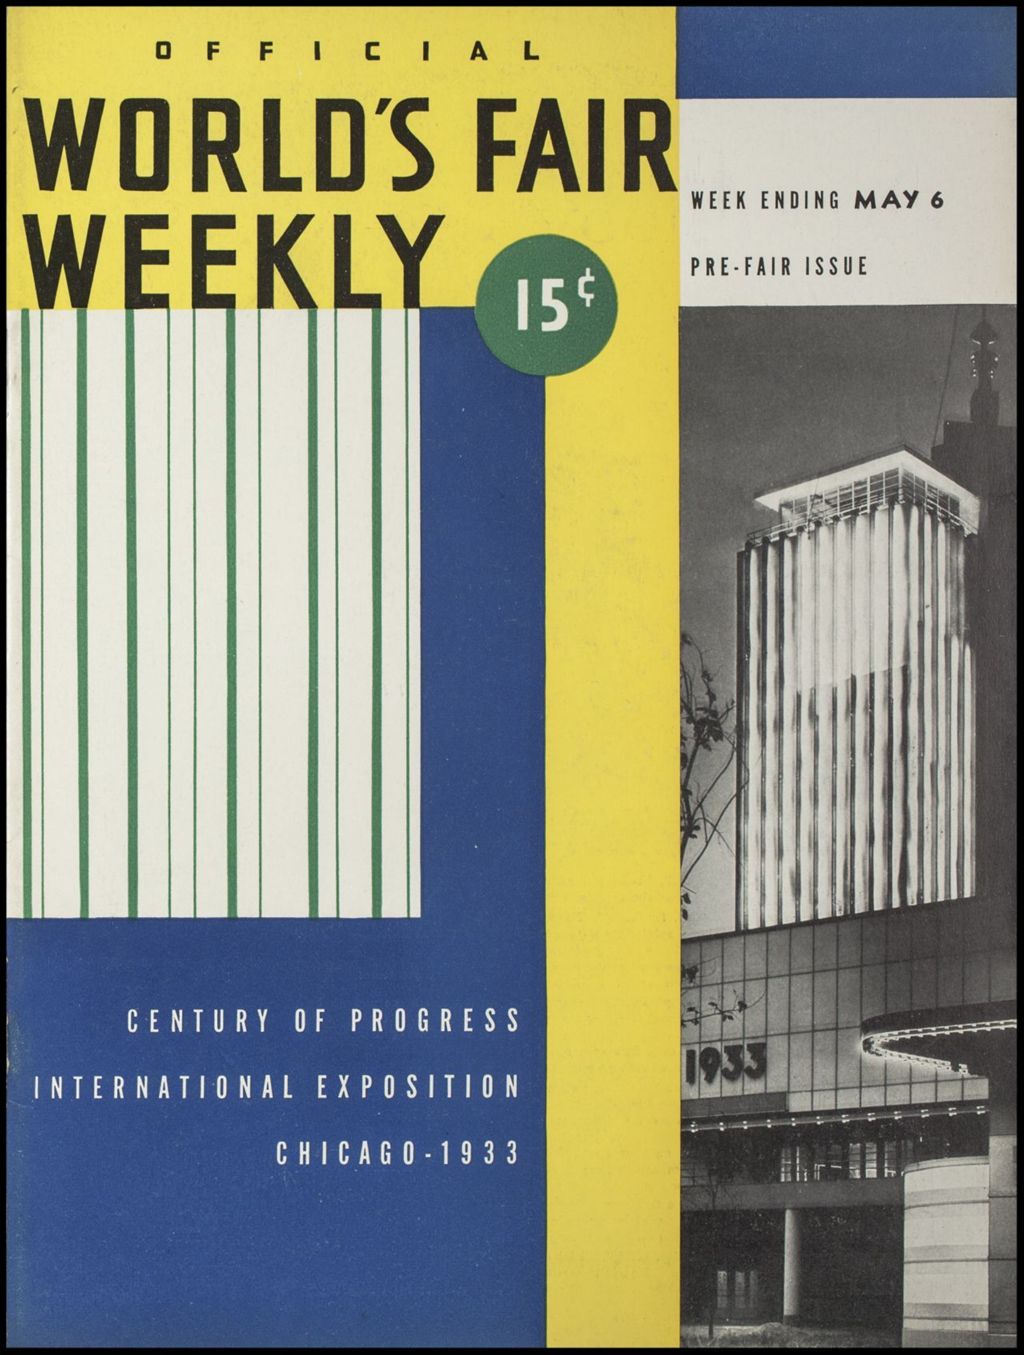 World's Fair Weekly, Week Ending May 6, 1933